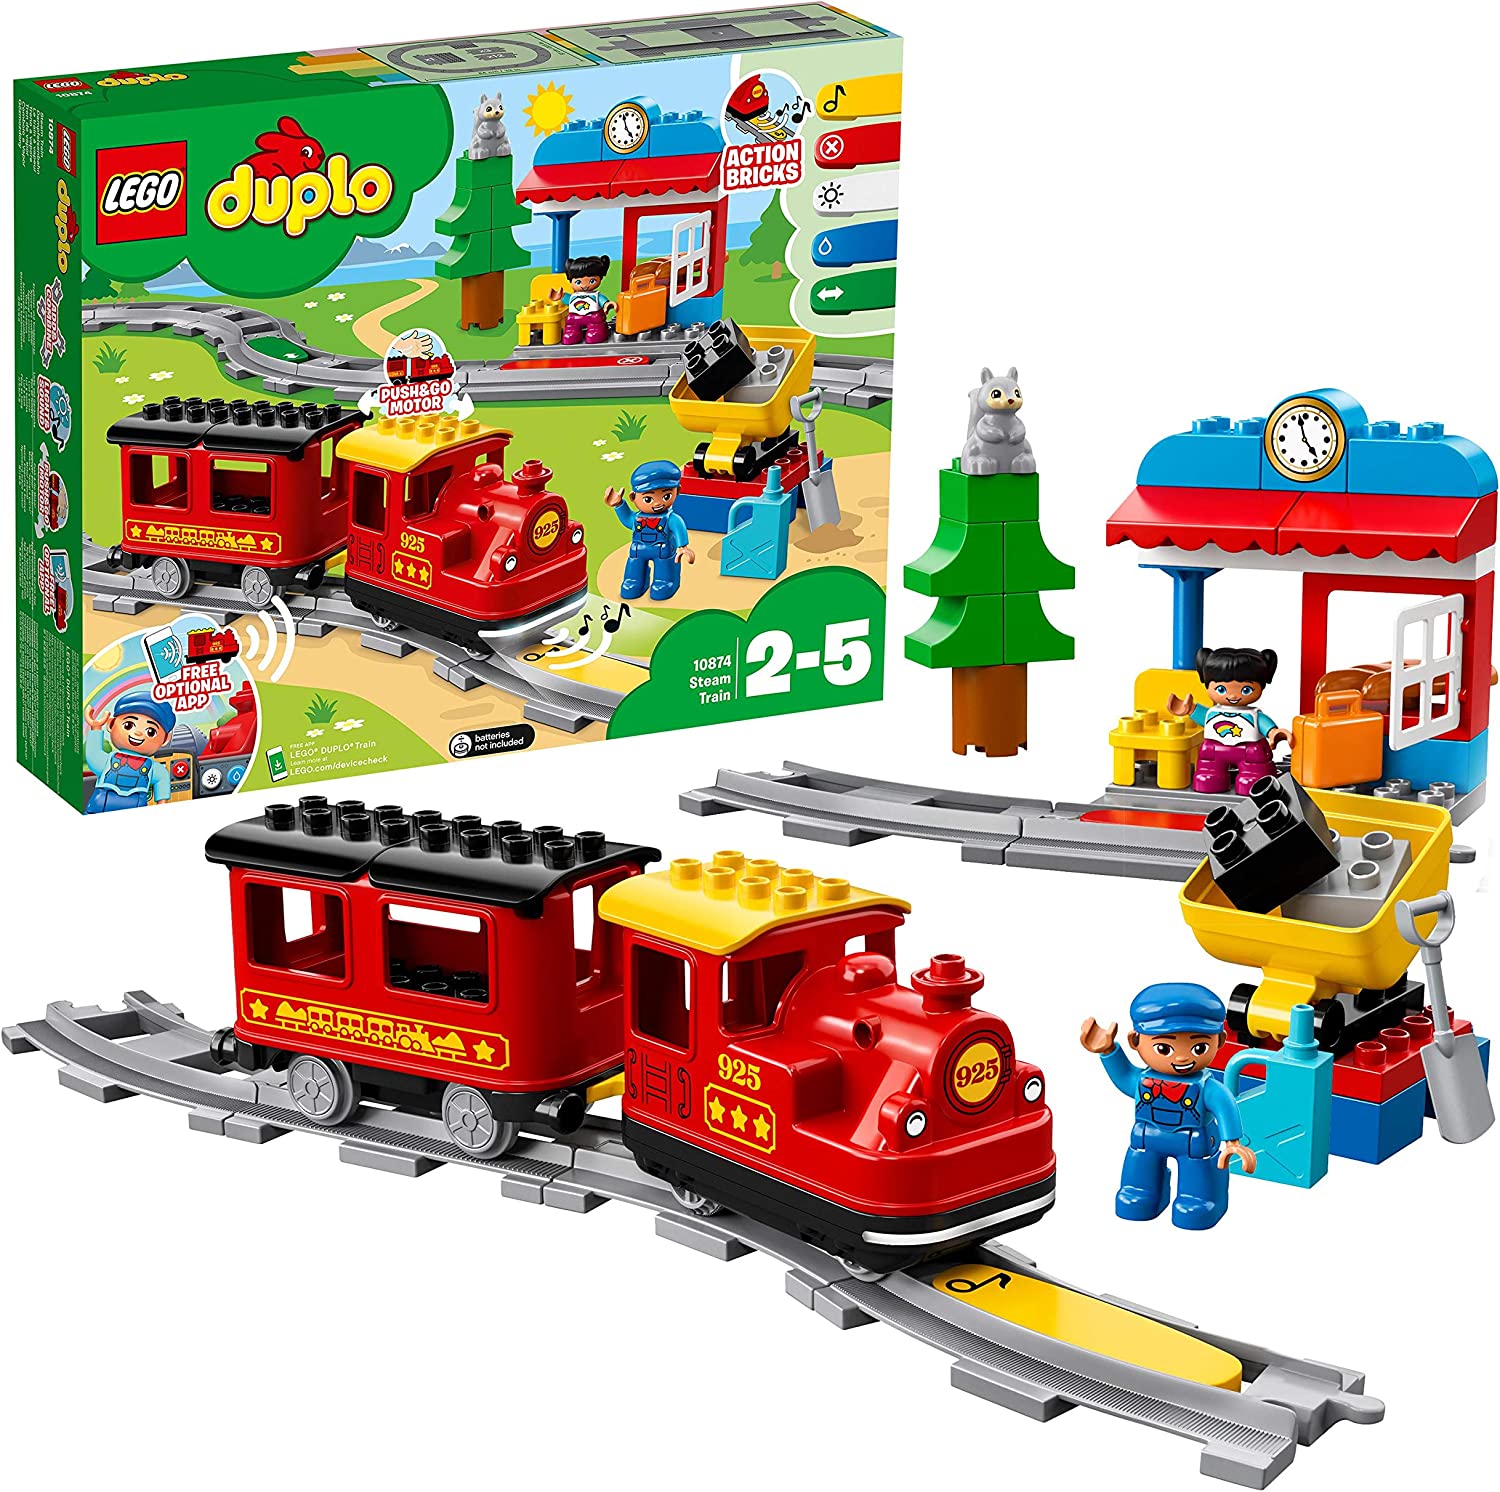 Dampfeisenbahn von LEGO duplo - Verpackung